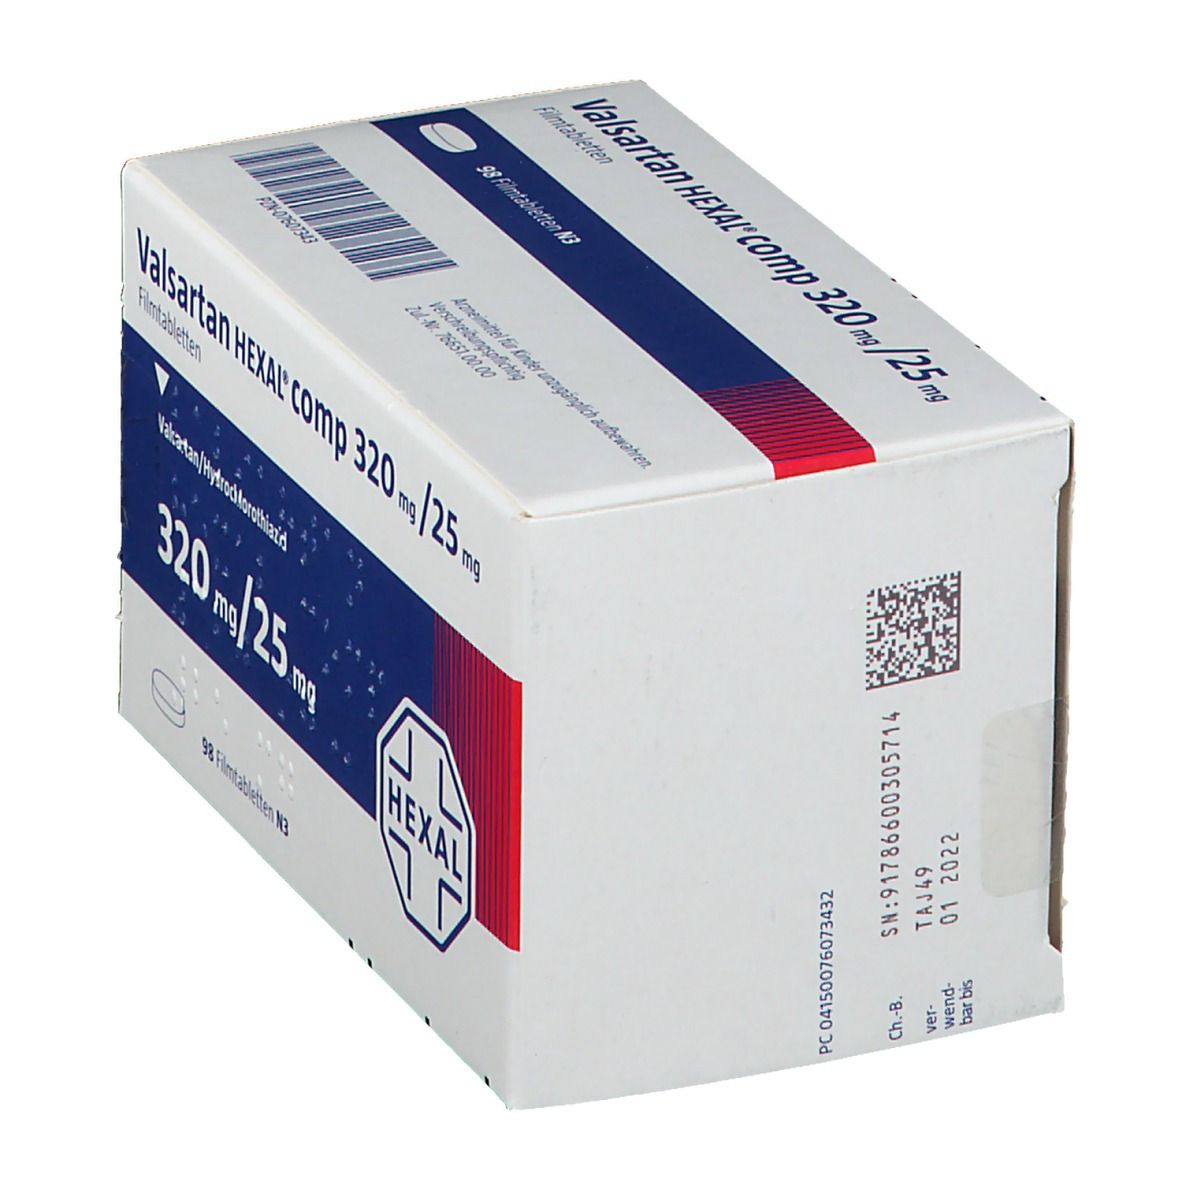 Valsartan HEXAL® comp 320 mg/25 mg